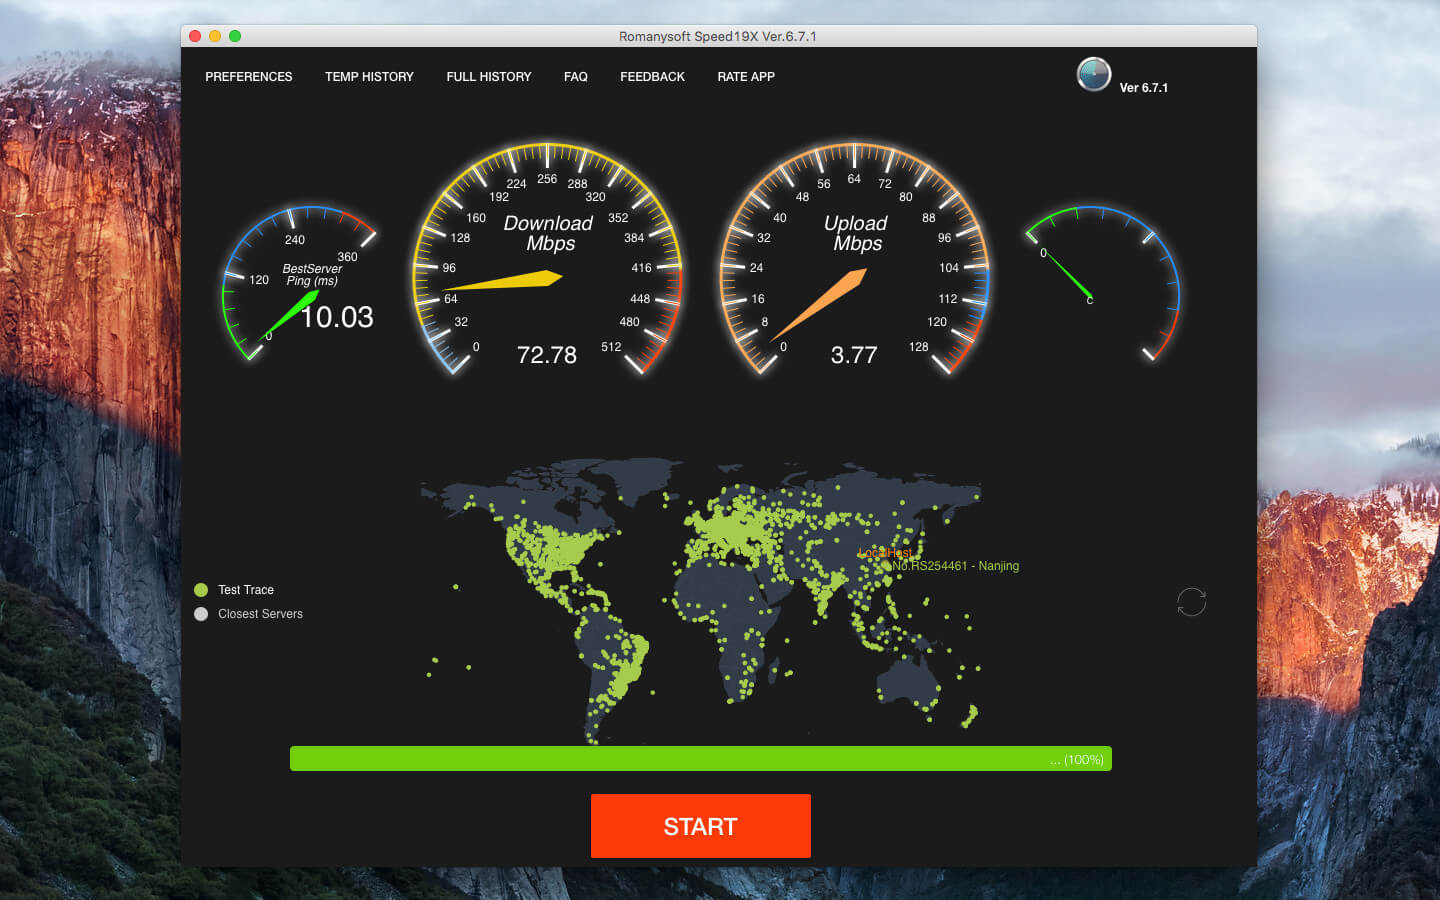 Скорость интернета за сколько скачается. СПИД скорость. HD Speed утилита. Скорость интернета NASA. Скорость сети Мак.